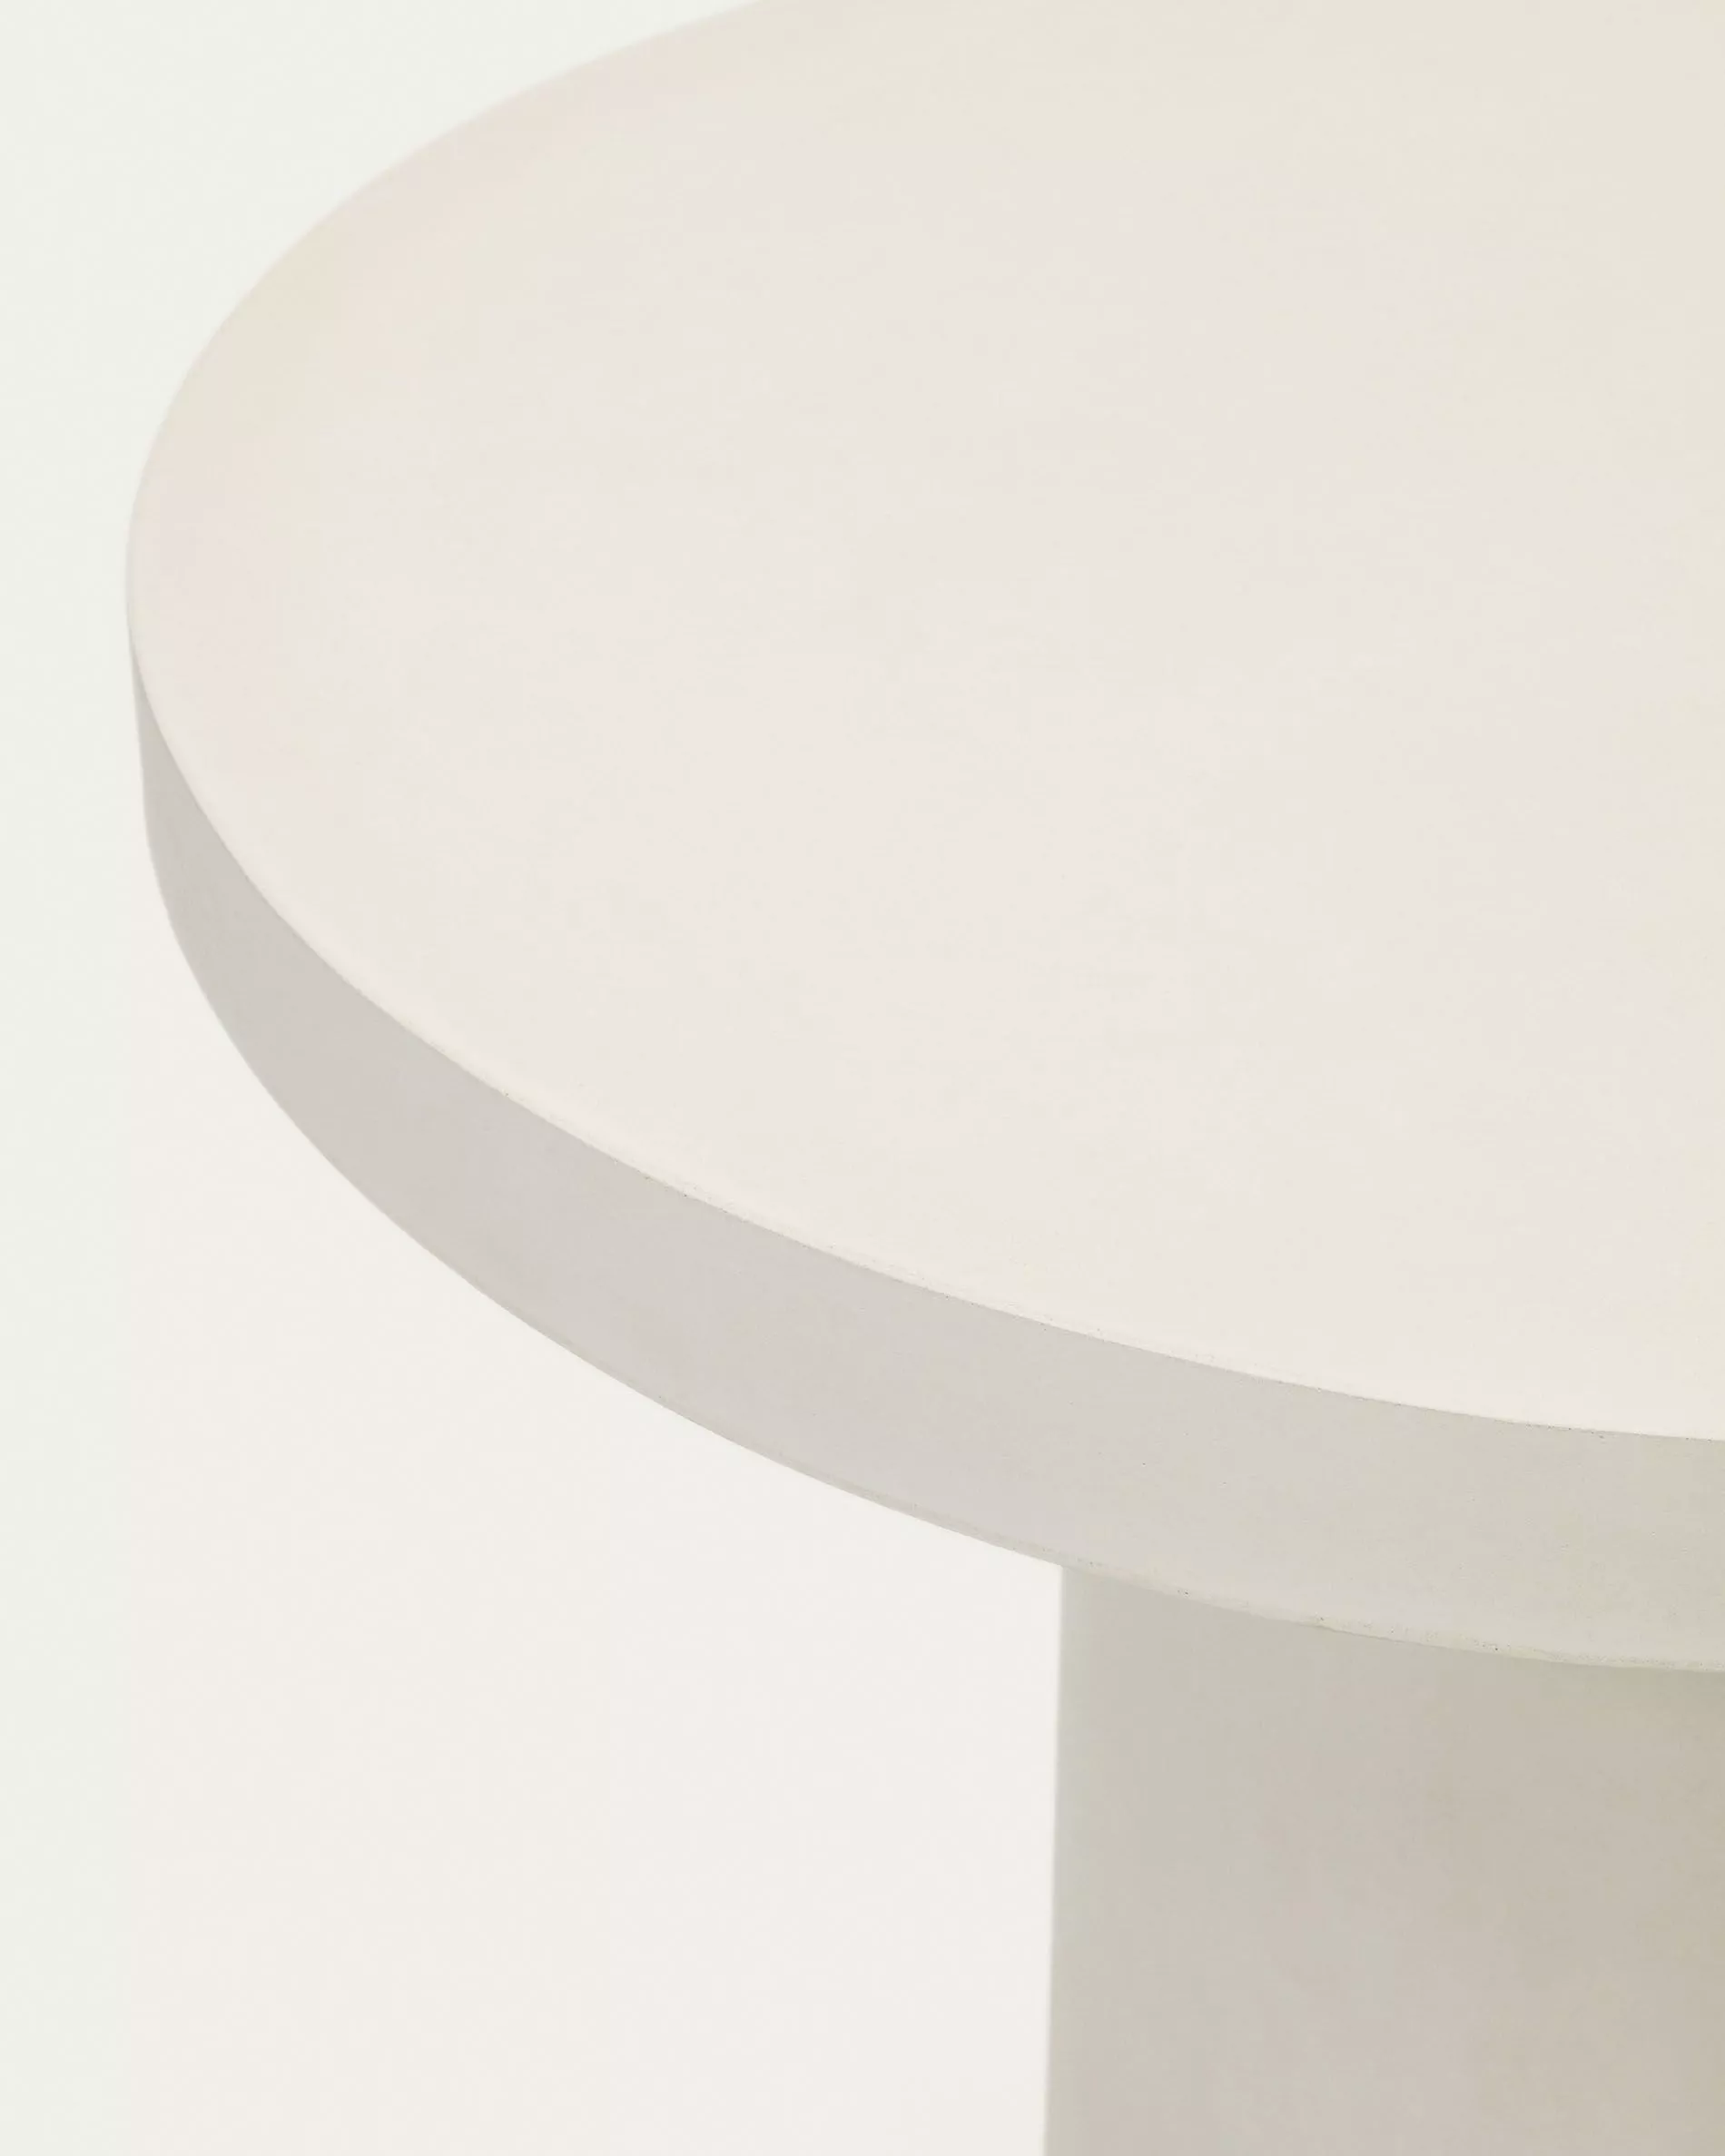 Круглый стол La Forma Aiguablava из белого цемента 90 см